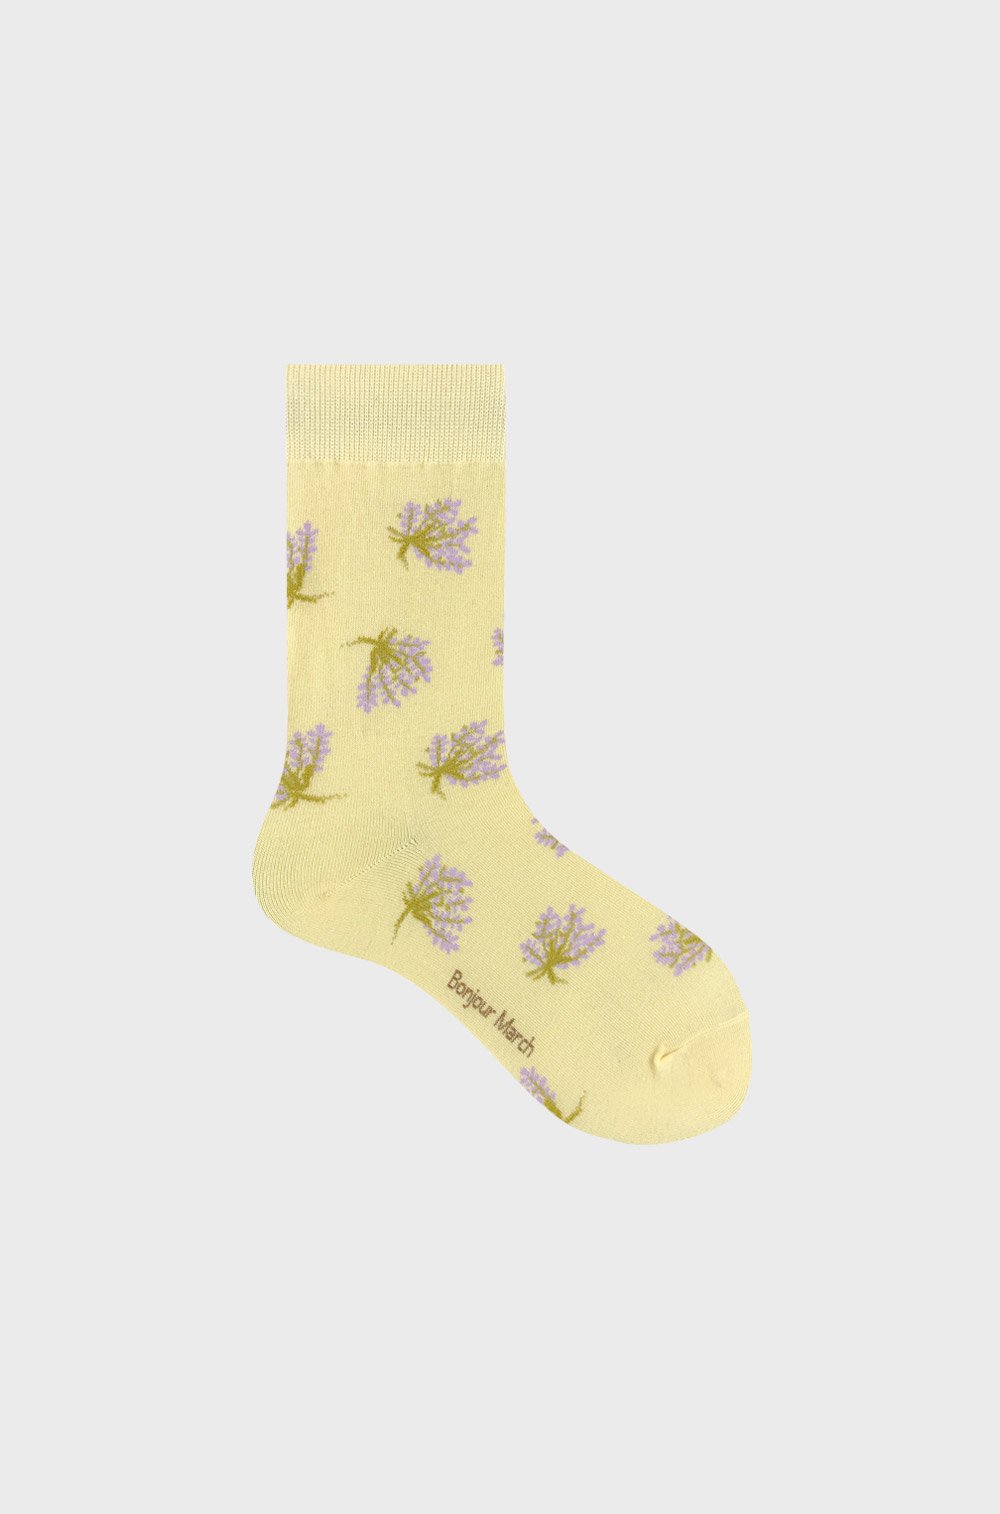 Lavender bouquet socks